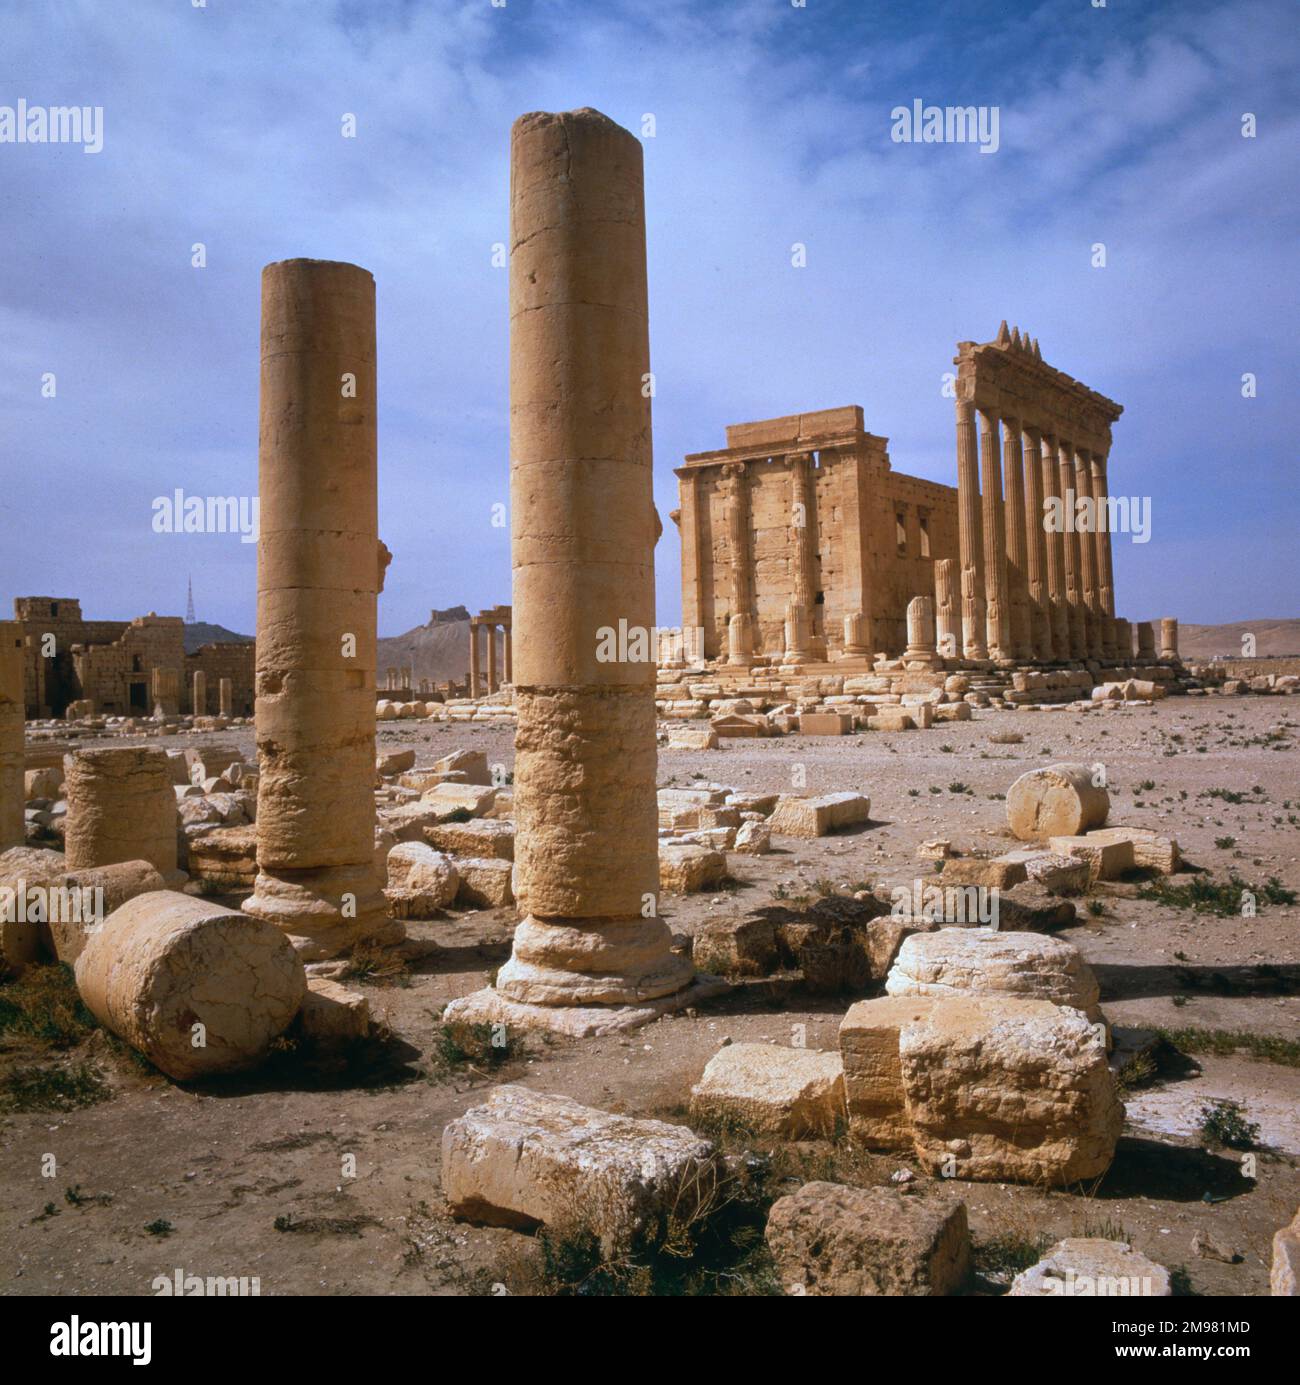 Palmyra, Syrie - colonnes et vue vers le Temple de Bel (Baal). Les ruines du temple ont été détruites par l'État islamique d'Irak et le Levant (ISIS) en août 2015. Banque D'Images